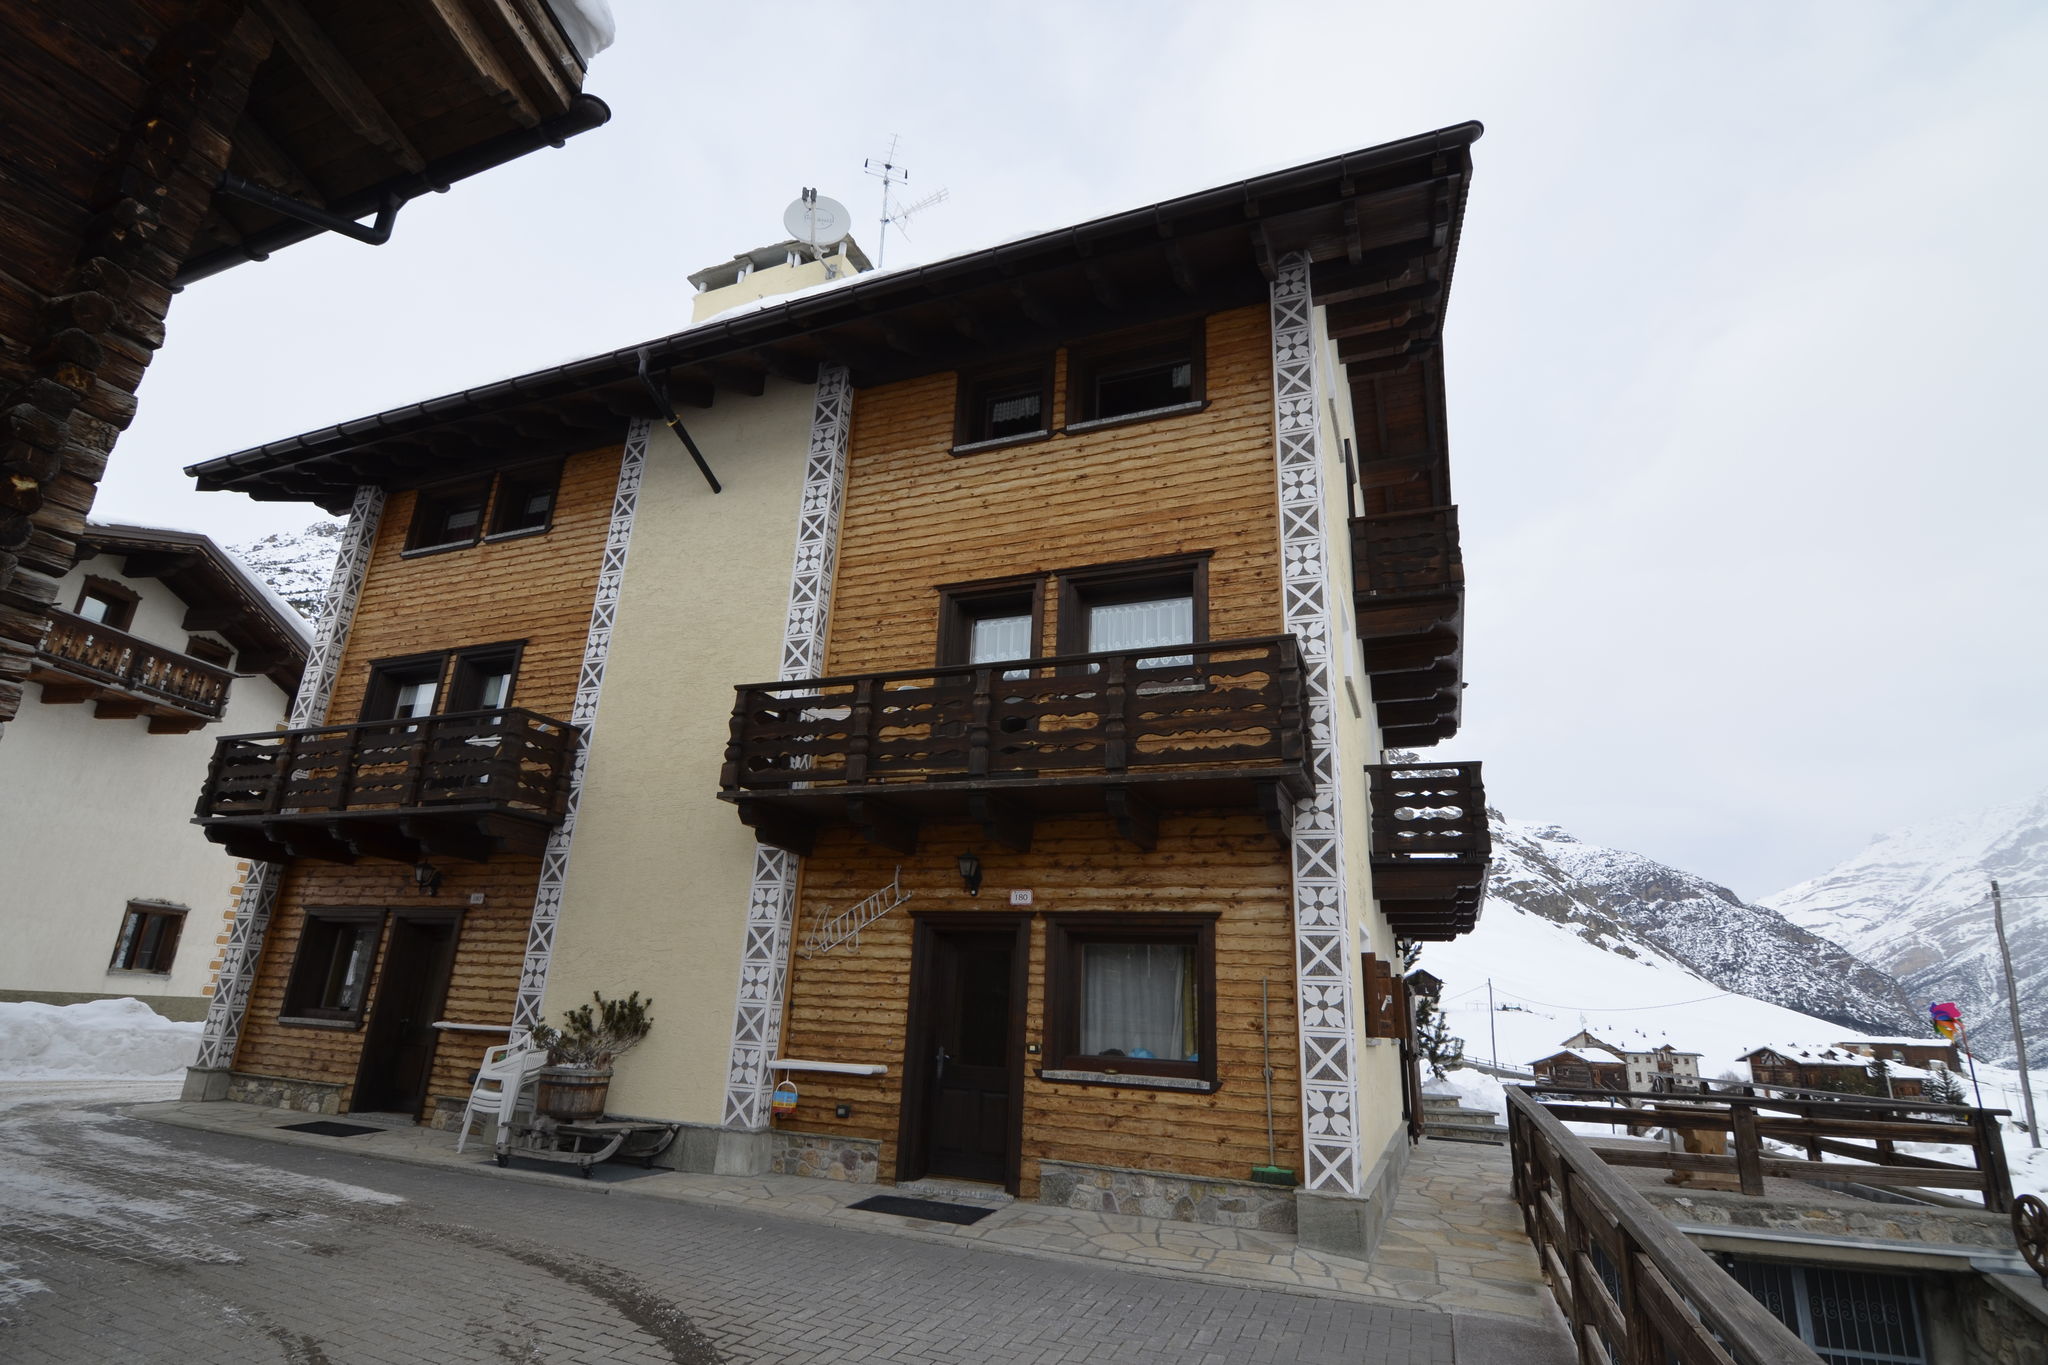 Modern vakantiehuis in Livigno, Italië nabij het skigebied